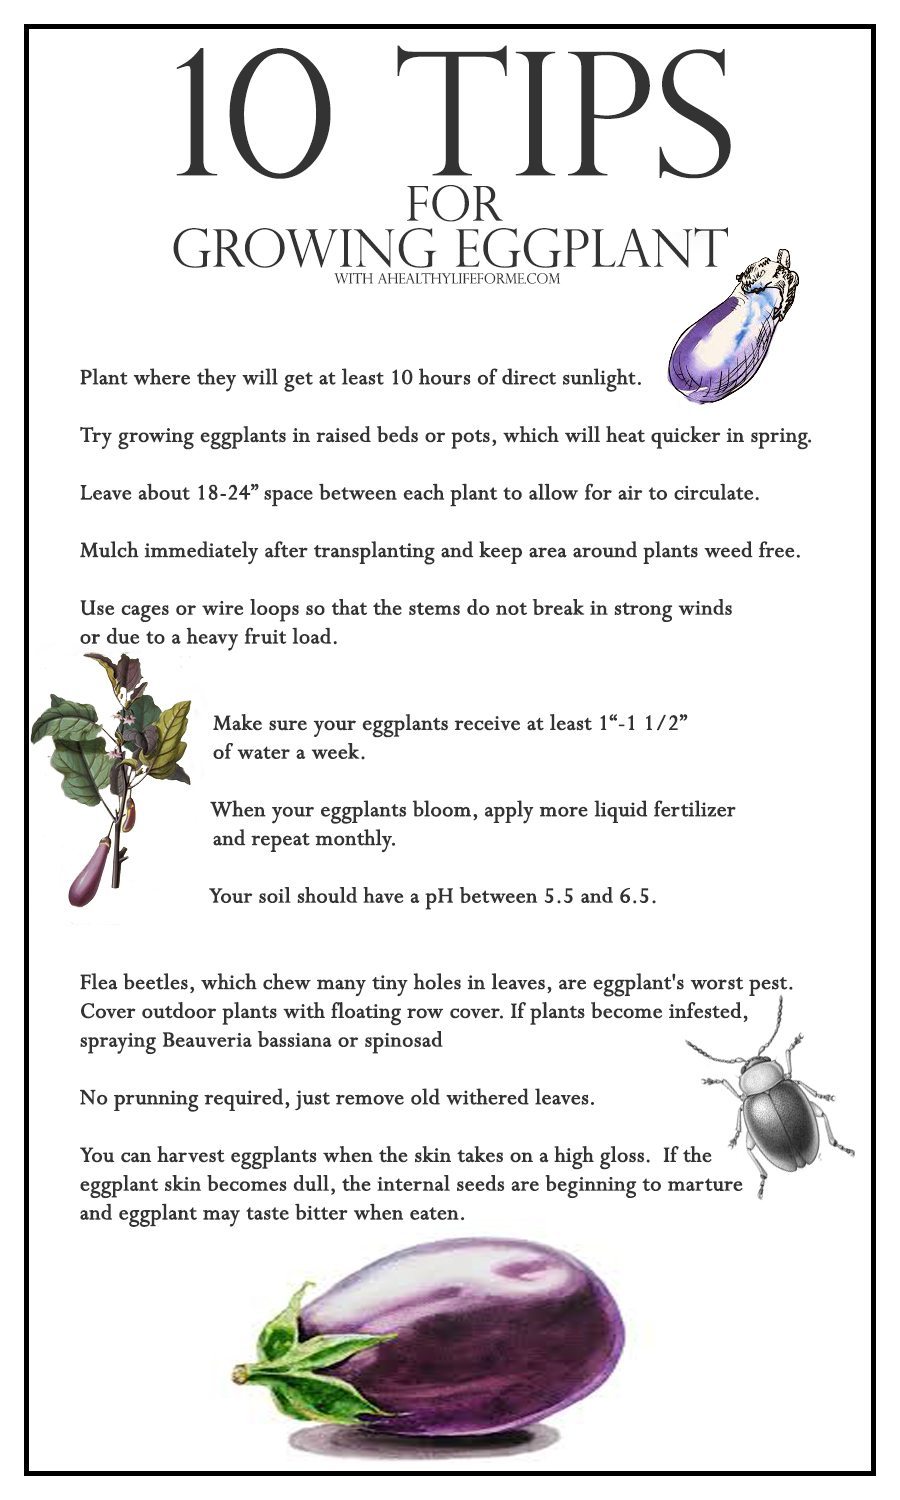 10 Tips for growing eggplants